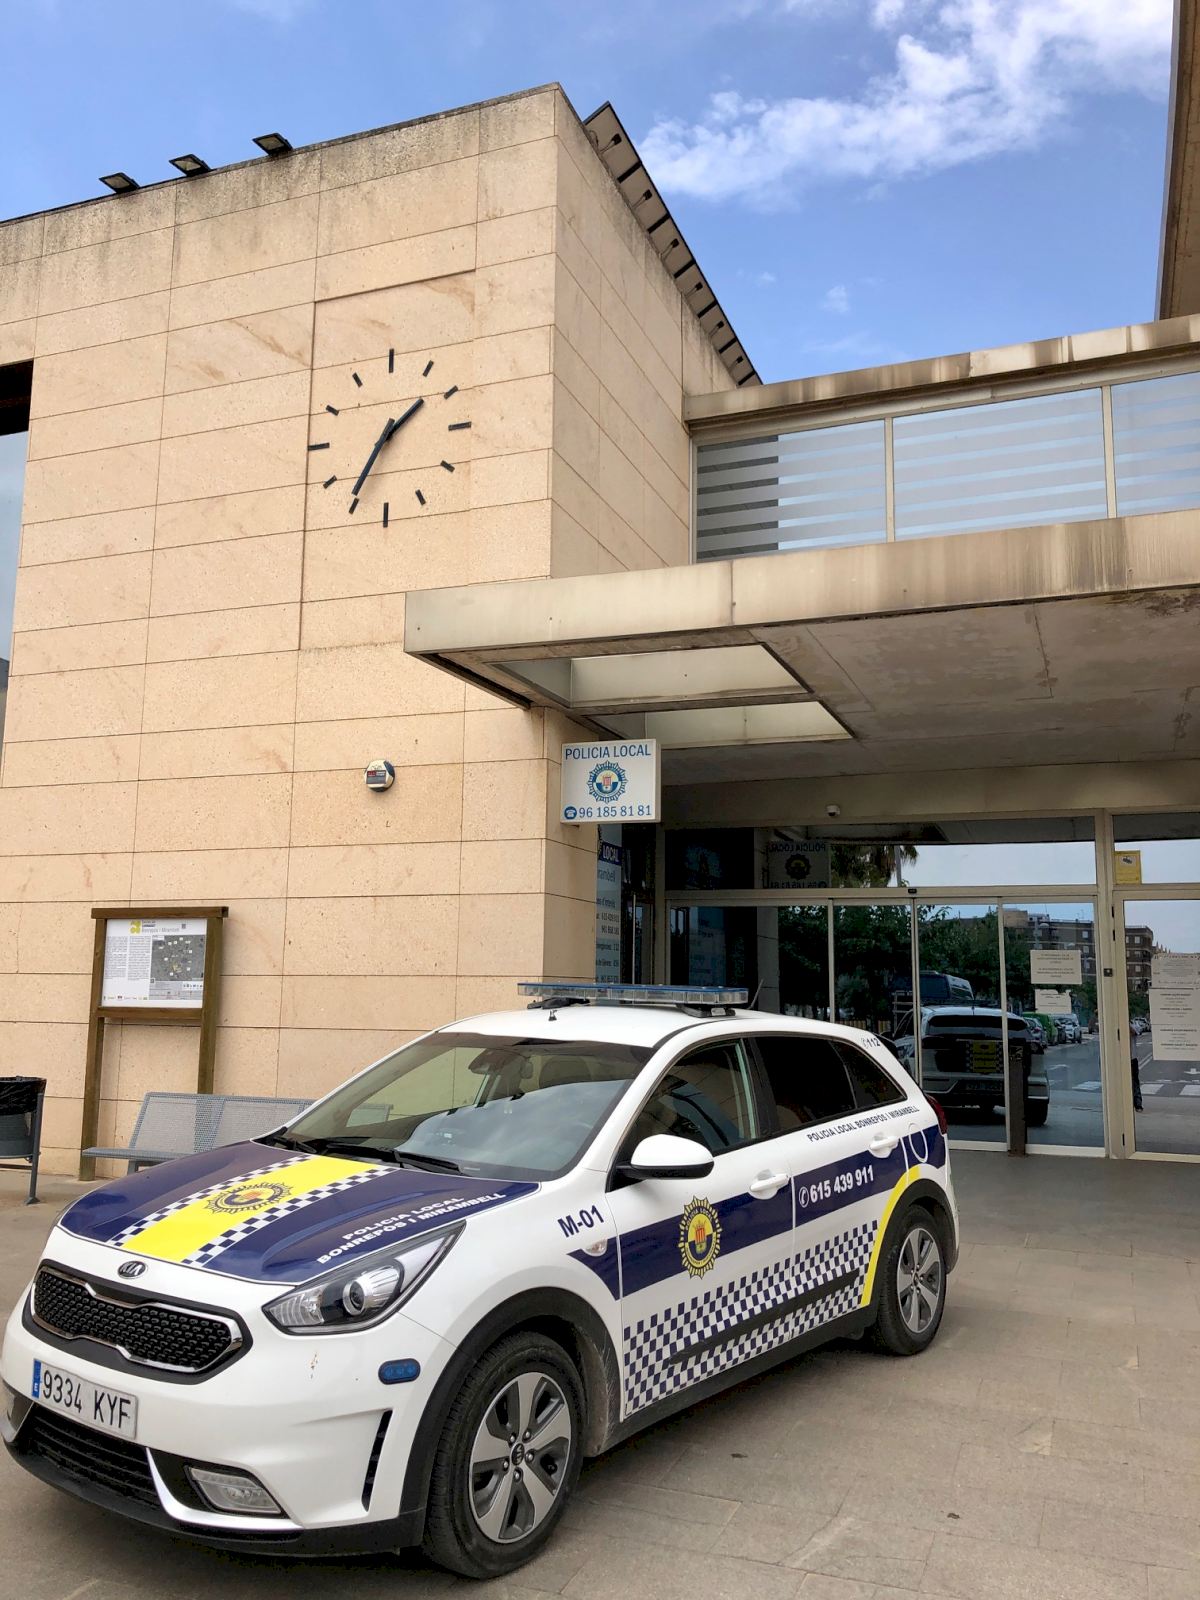 El Ayuntamiento de Bonrepòs i Mirambell intensifica la vigilancia para  evitar robos en viviendas y comercios